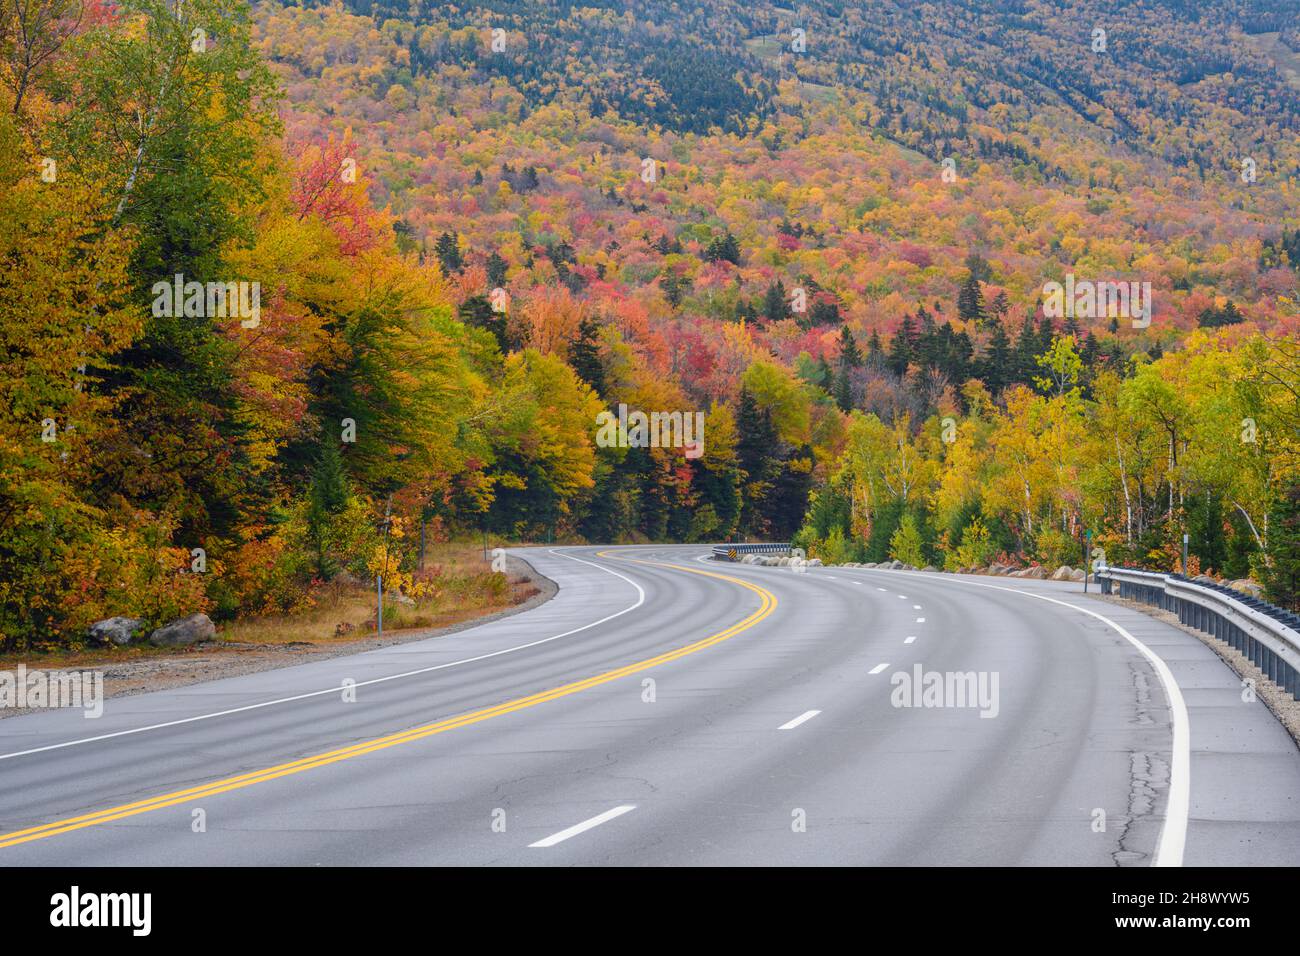 Autopista 16 y follaje otoñal, autopista 16 cerca de Pinkham Notch, New Hampshire, Estados Unidos Foto de stock